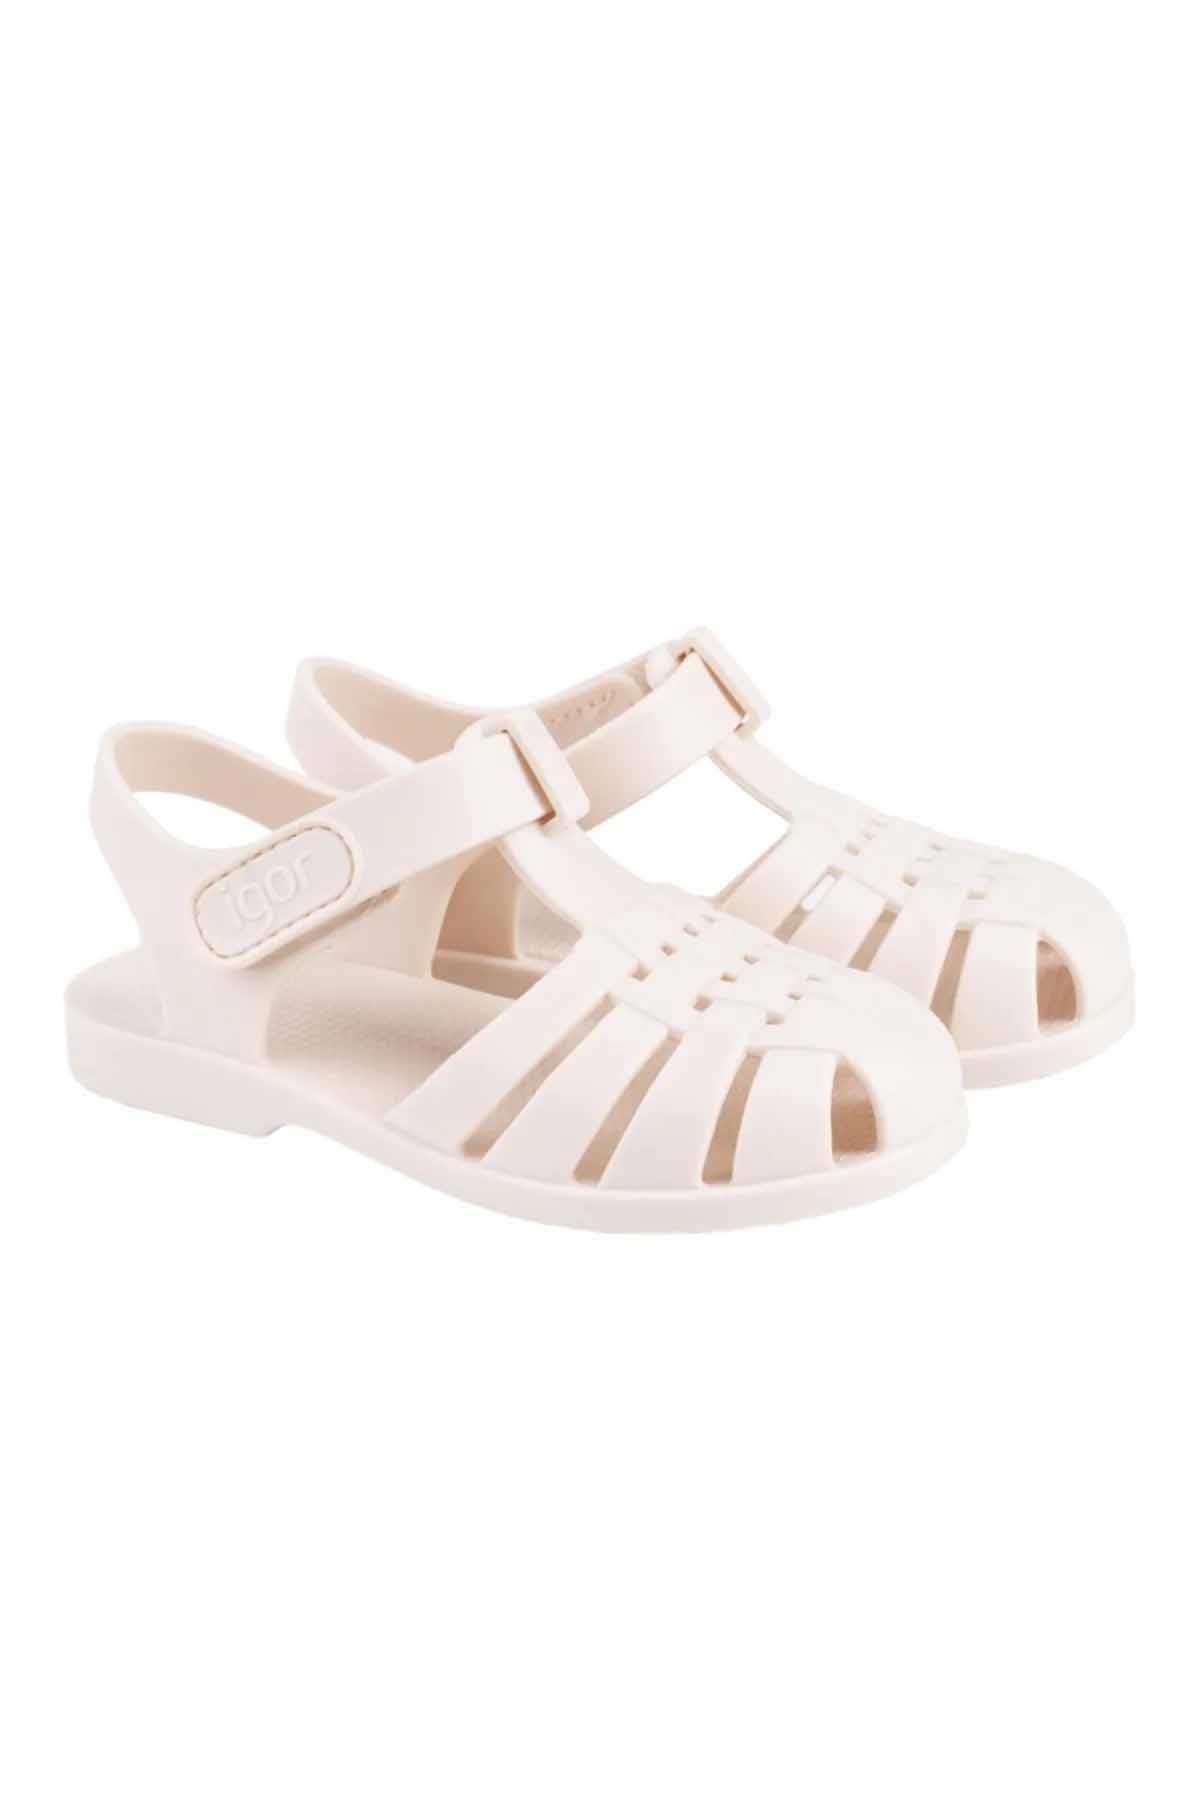 IGOR Clasica Velcro Çocuk Sandalet Ayakkabı S10288-079marfil